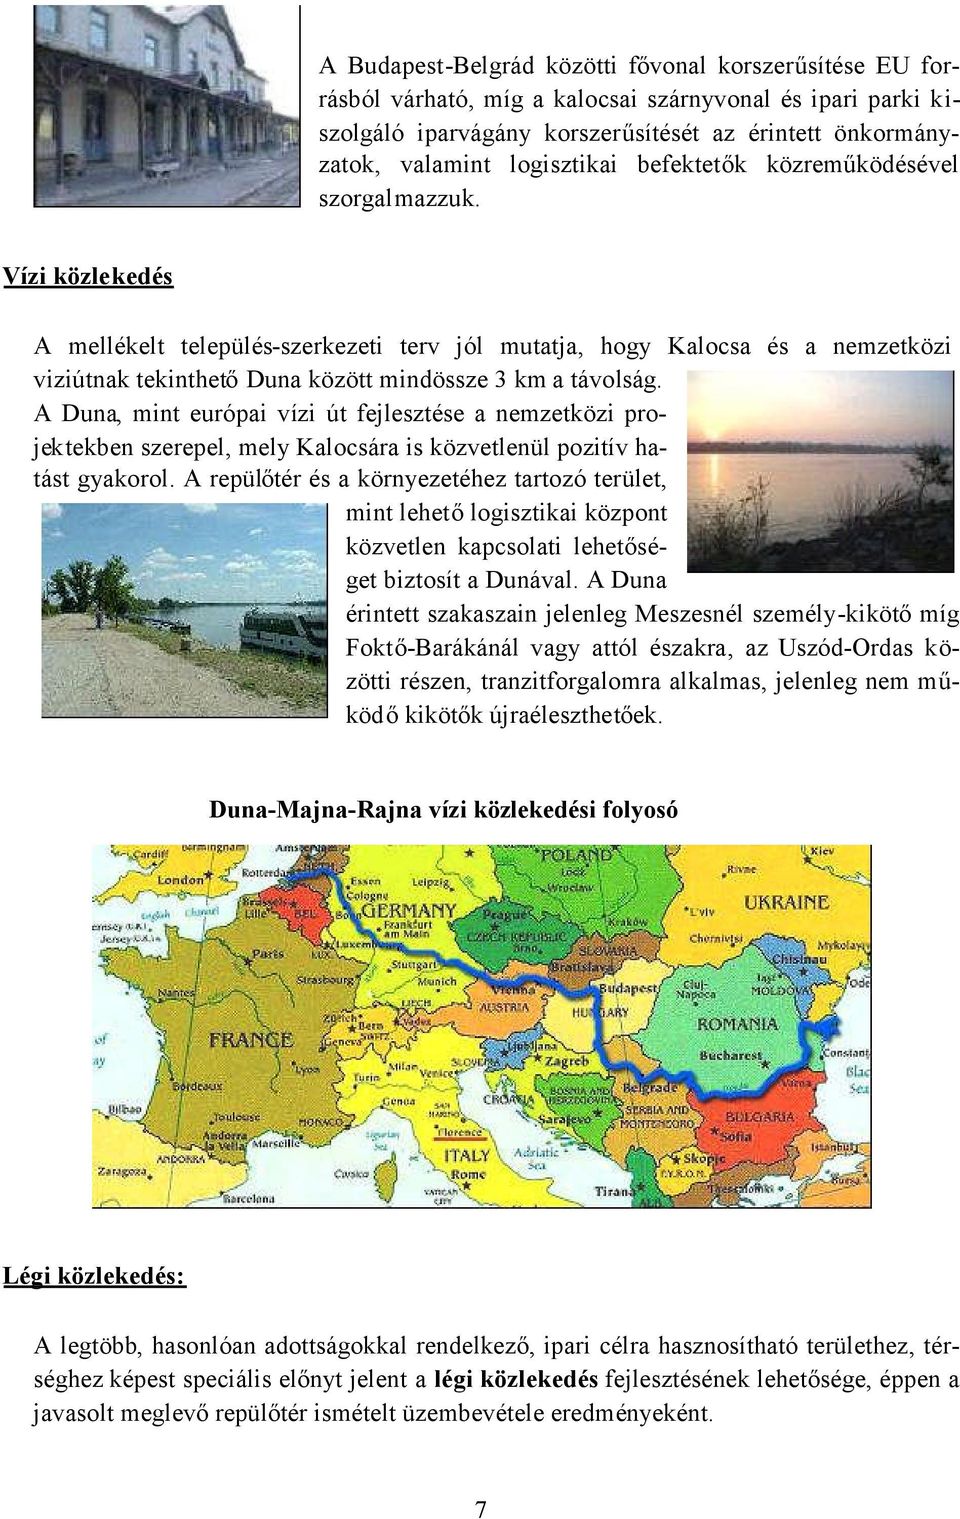 Vízi közlekedés A mellékelt település-szerkezeti terv jól mutatja, hogy Kalocsa és a nemzetközi viziútnak tekinthetőduna között mindössze 3 km a távolság.